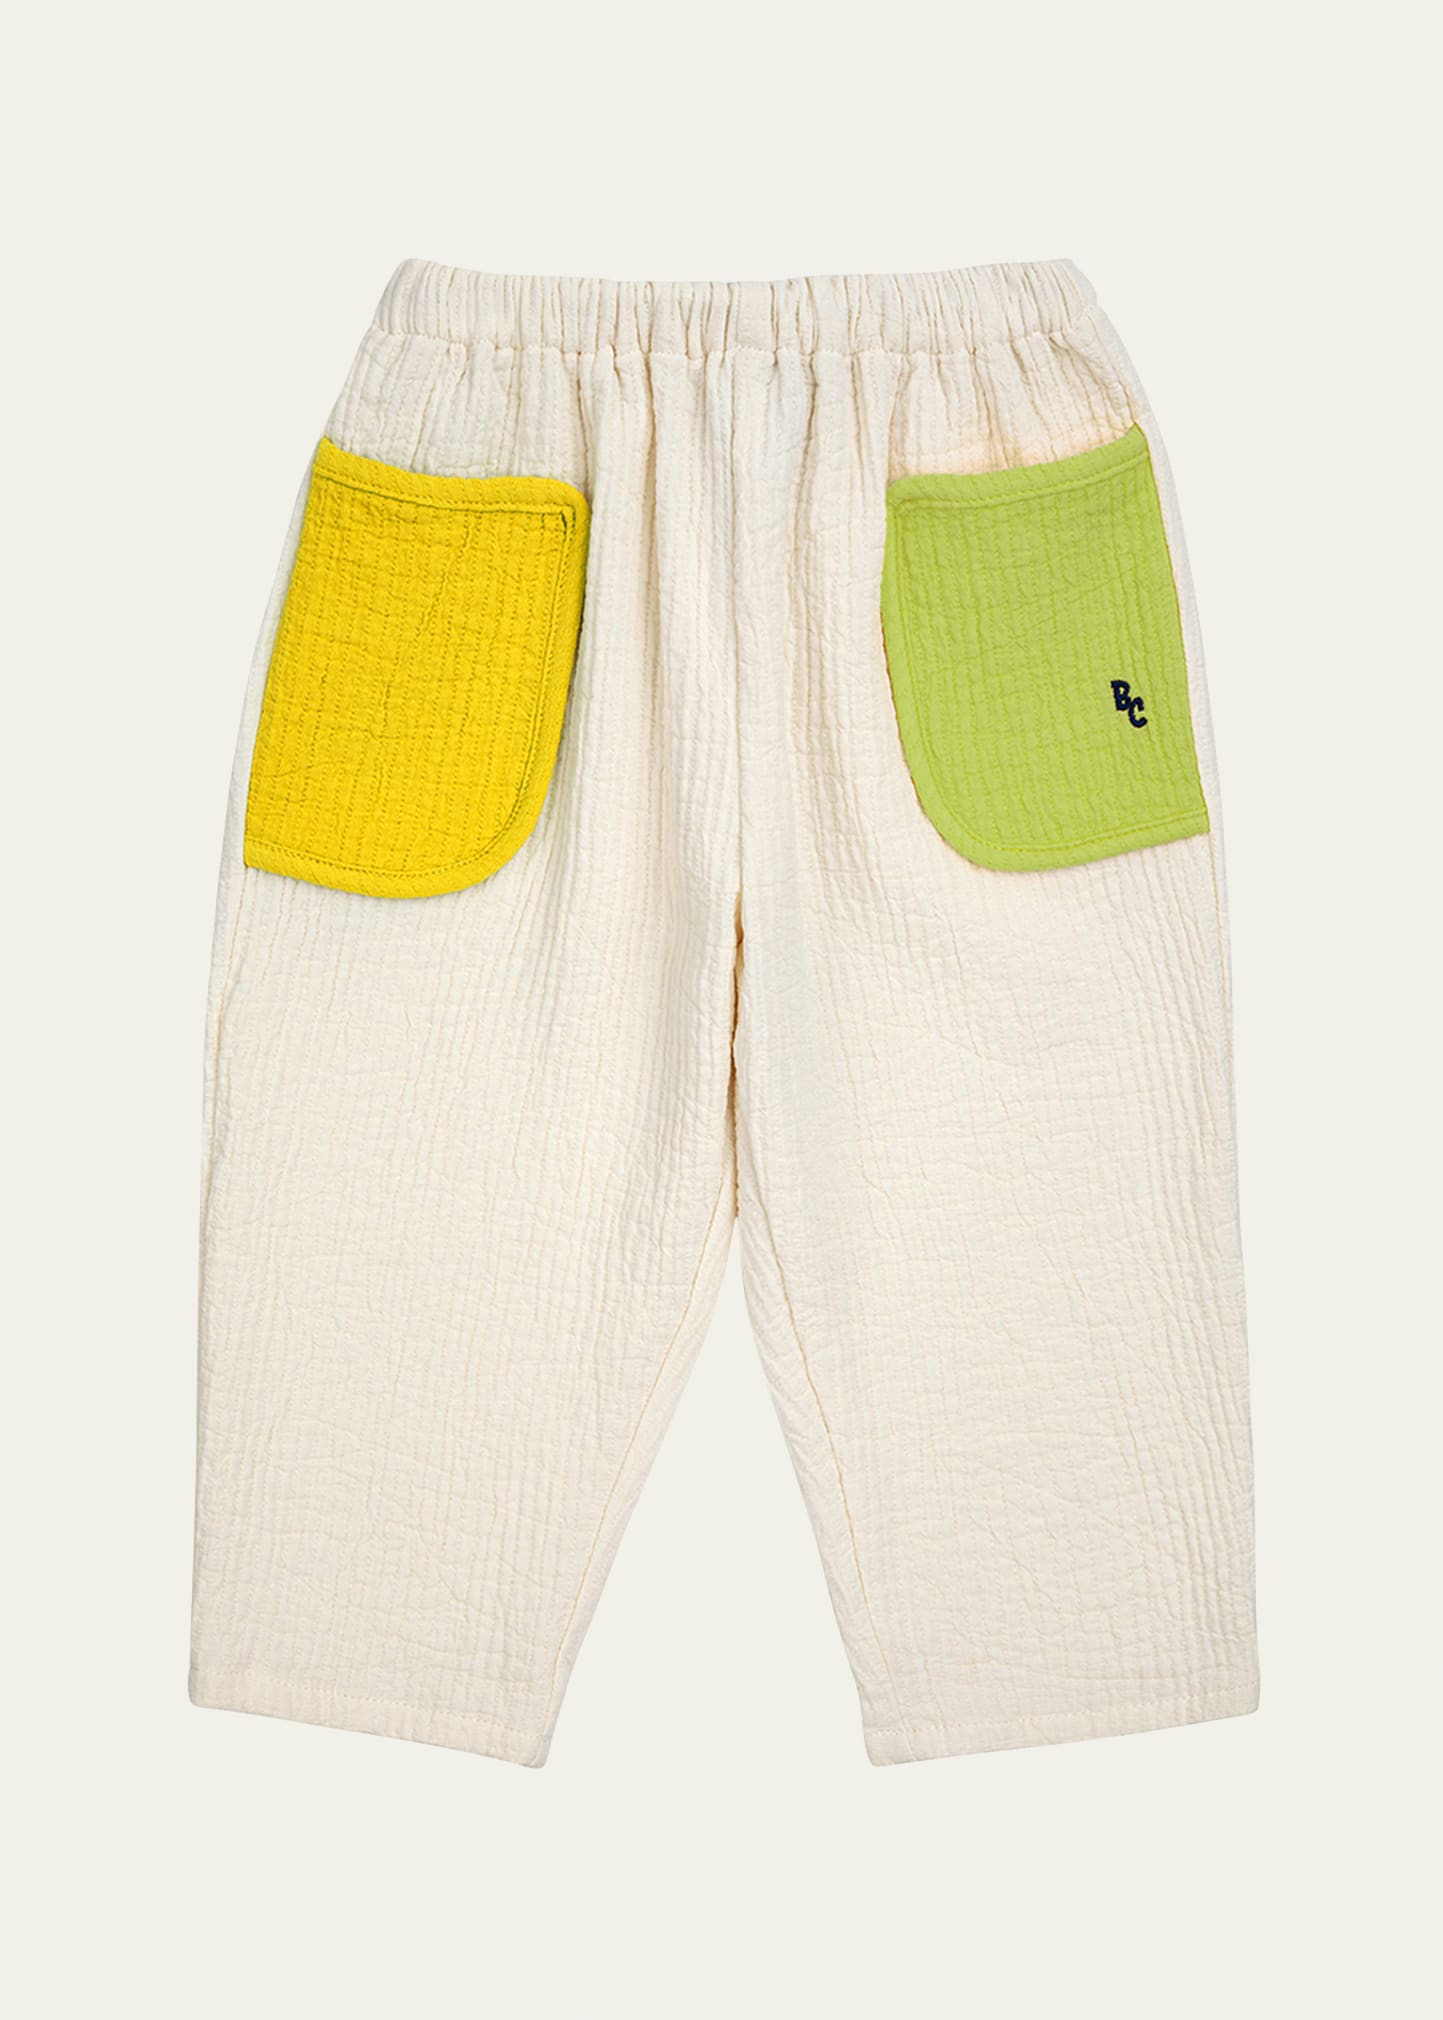 Kid's Color Block Woven Cotton Pants, Size 9M-24M